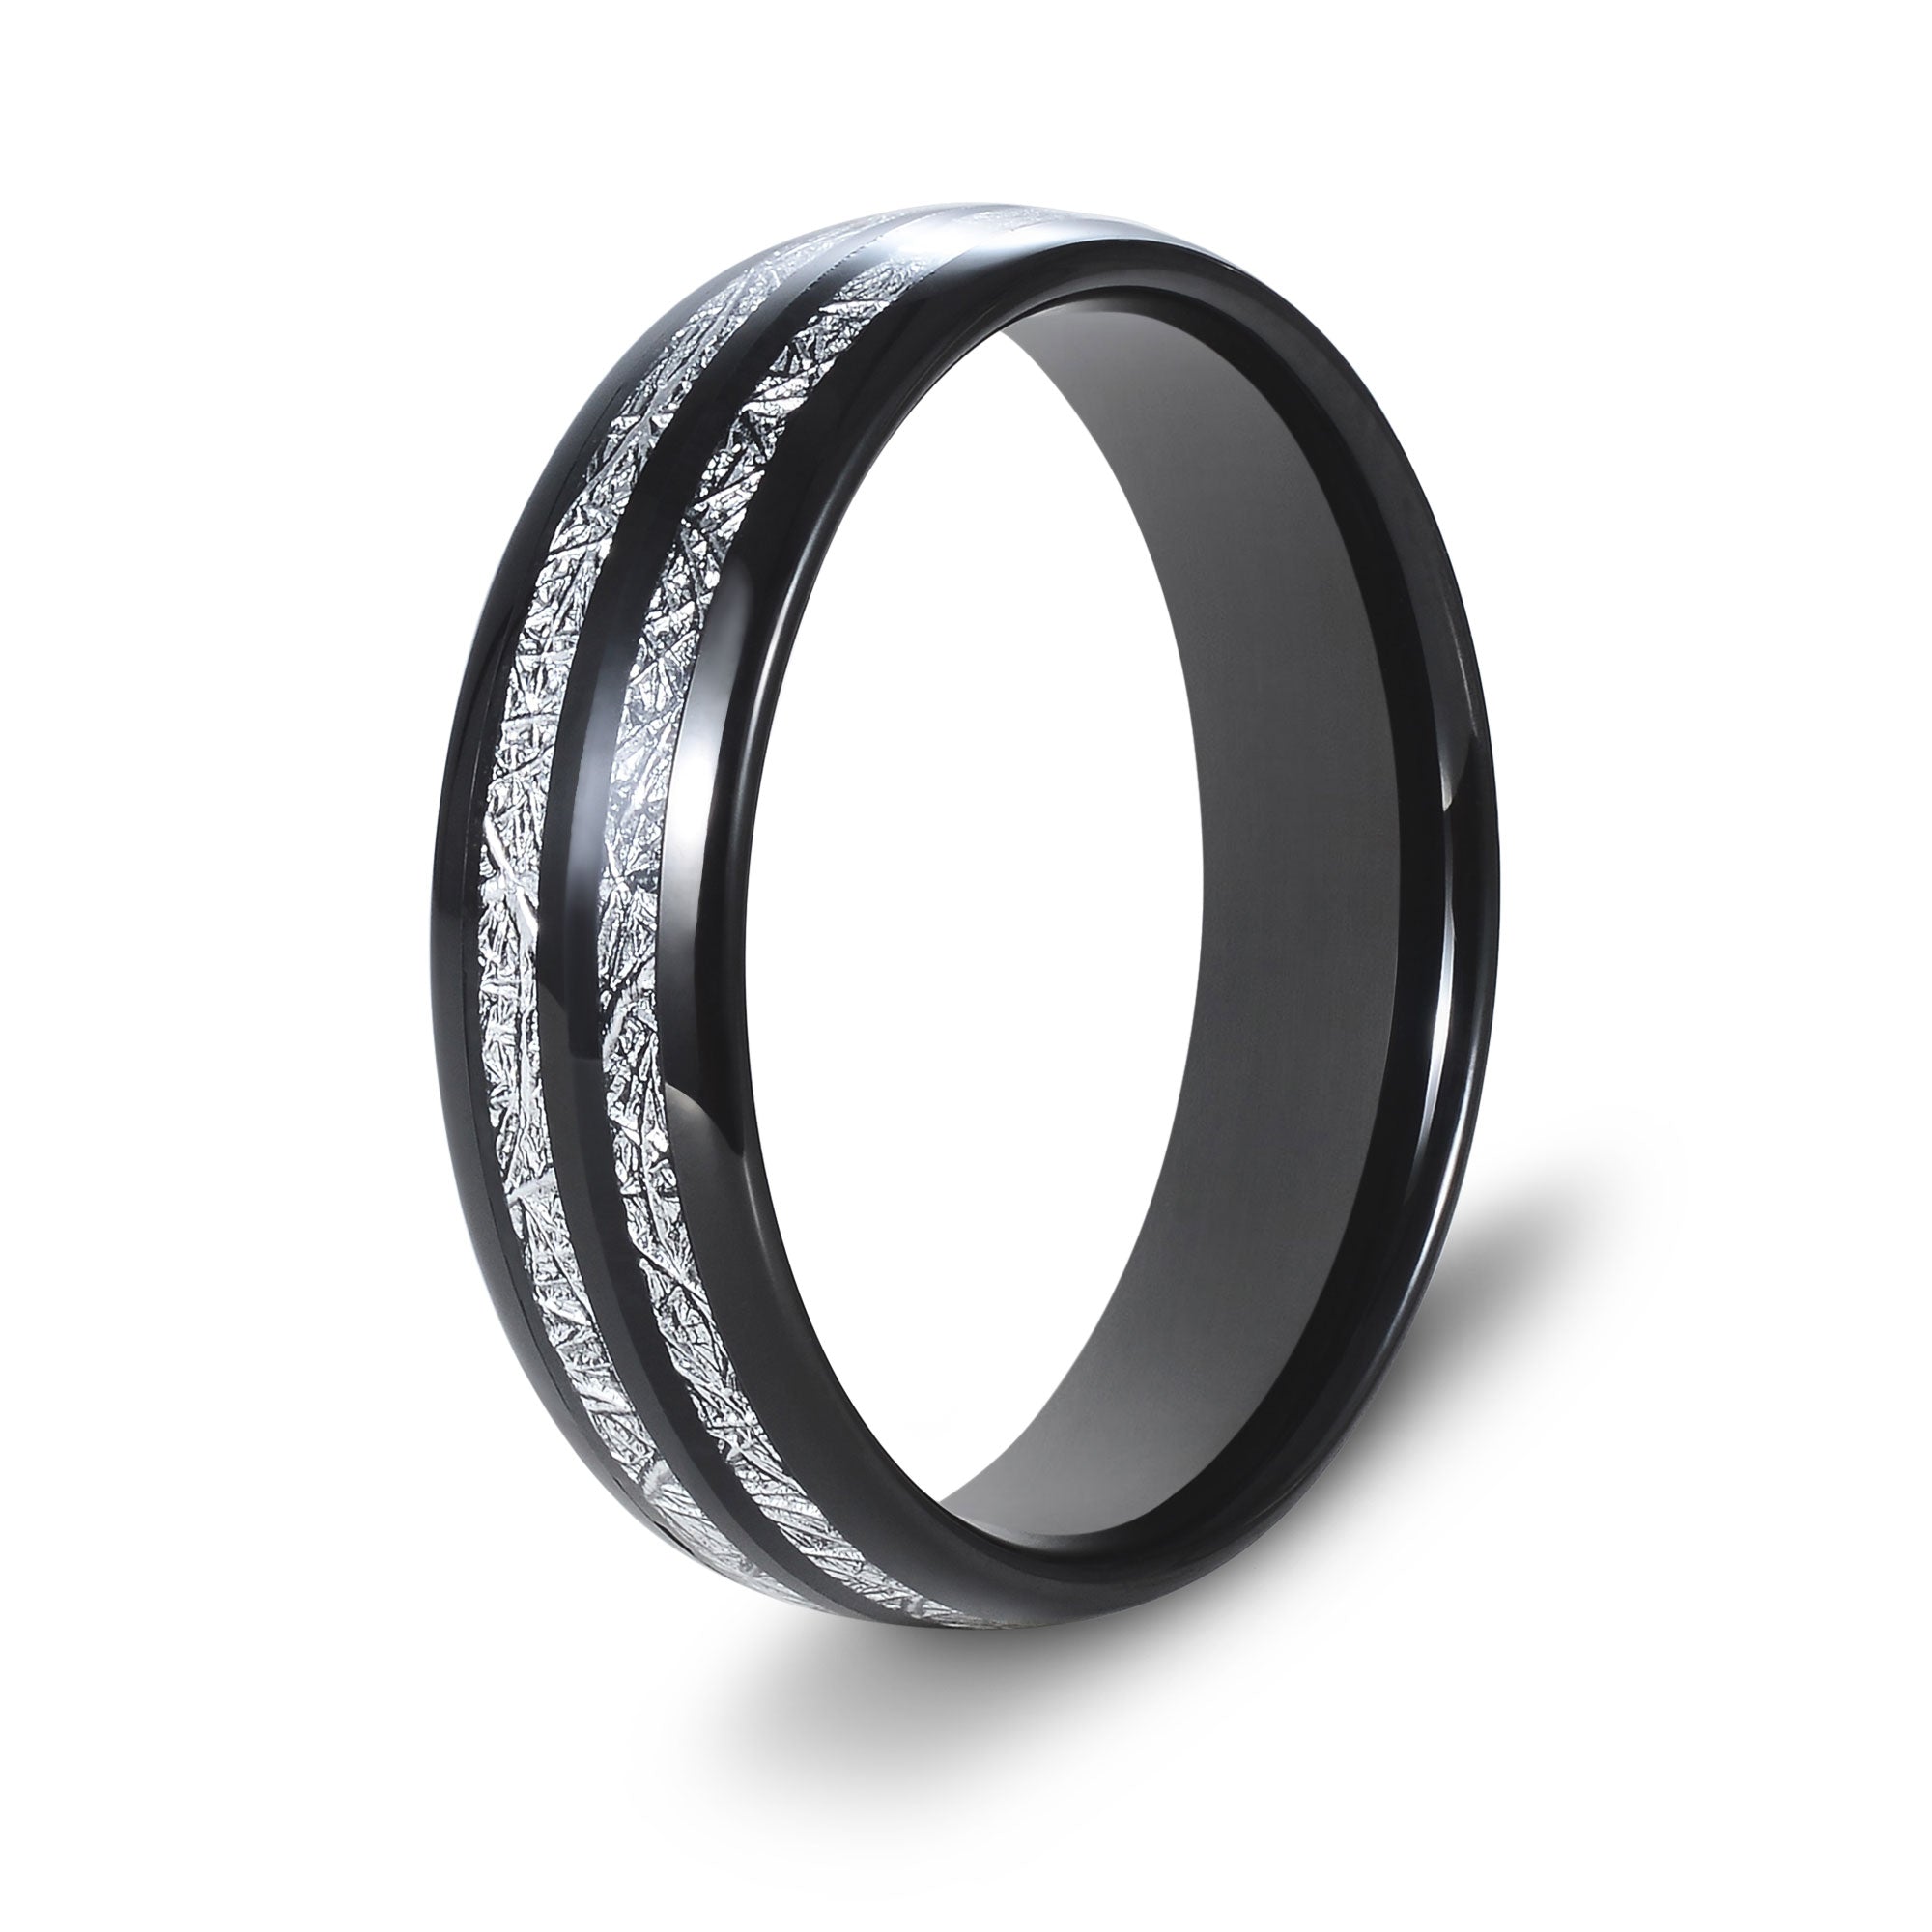 The Apollo - Black 6mm Meteorite Tungsten Ring